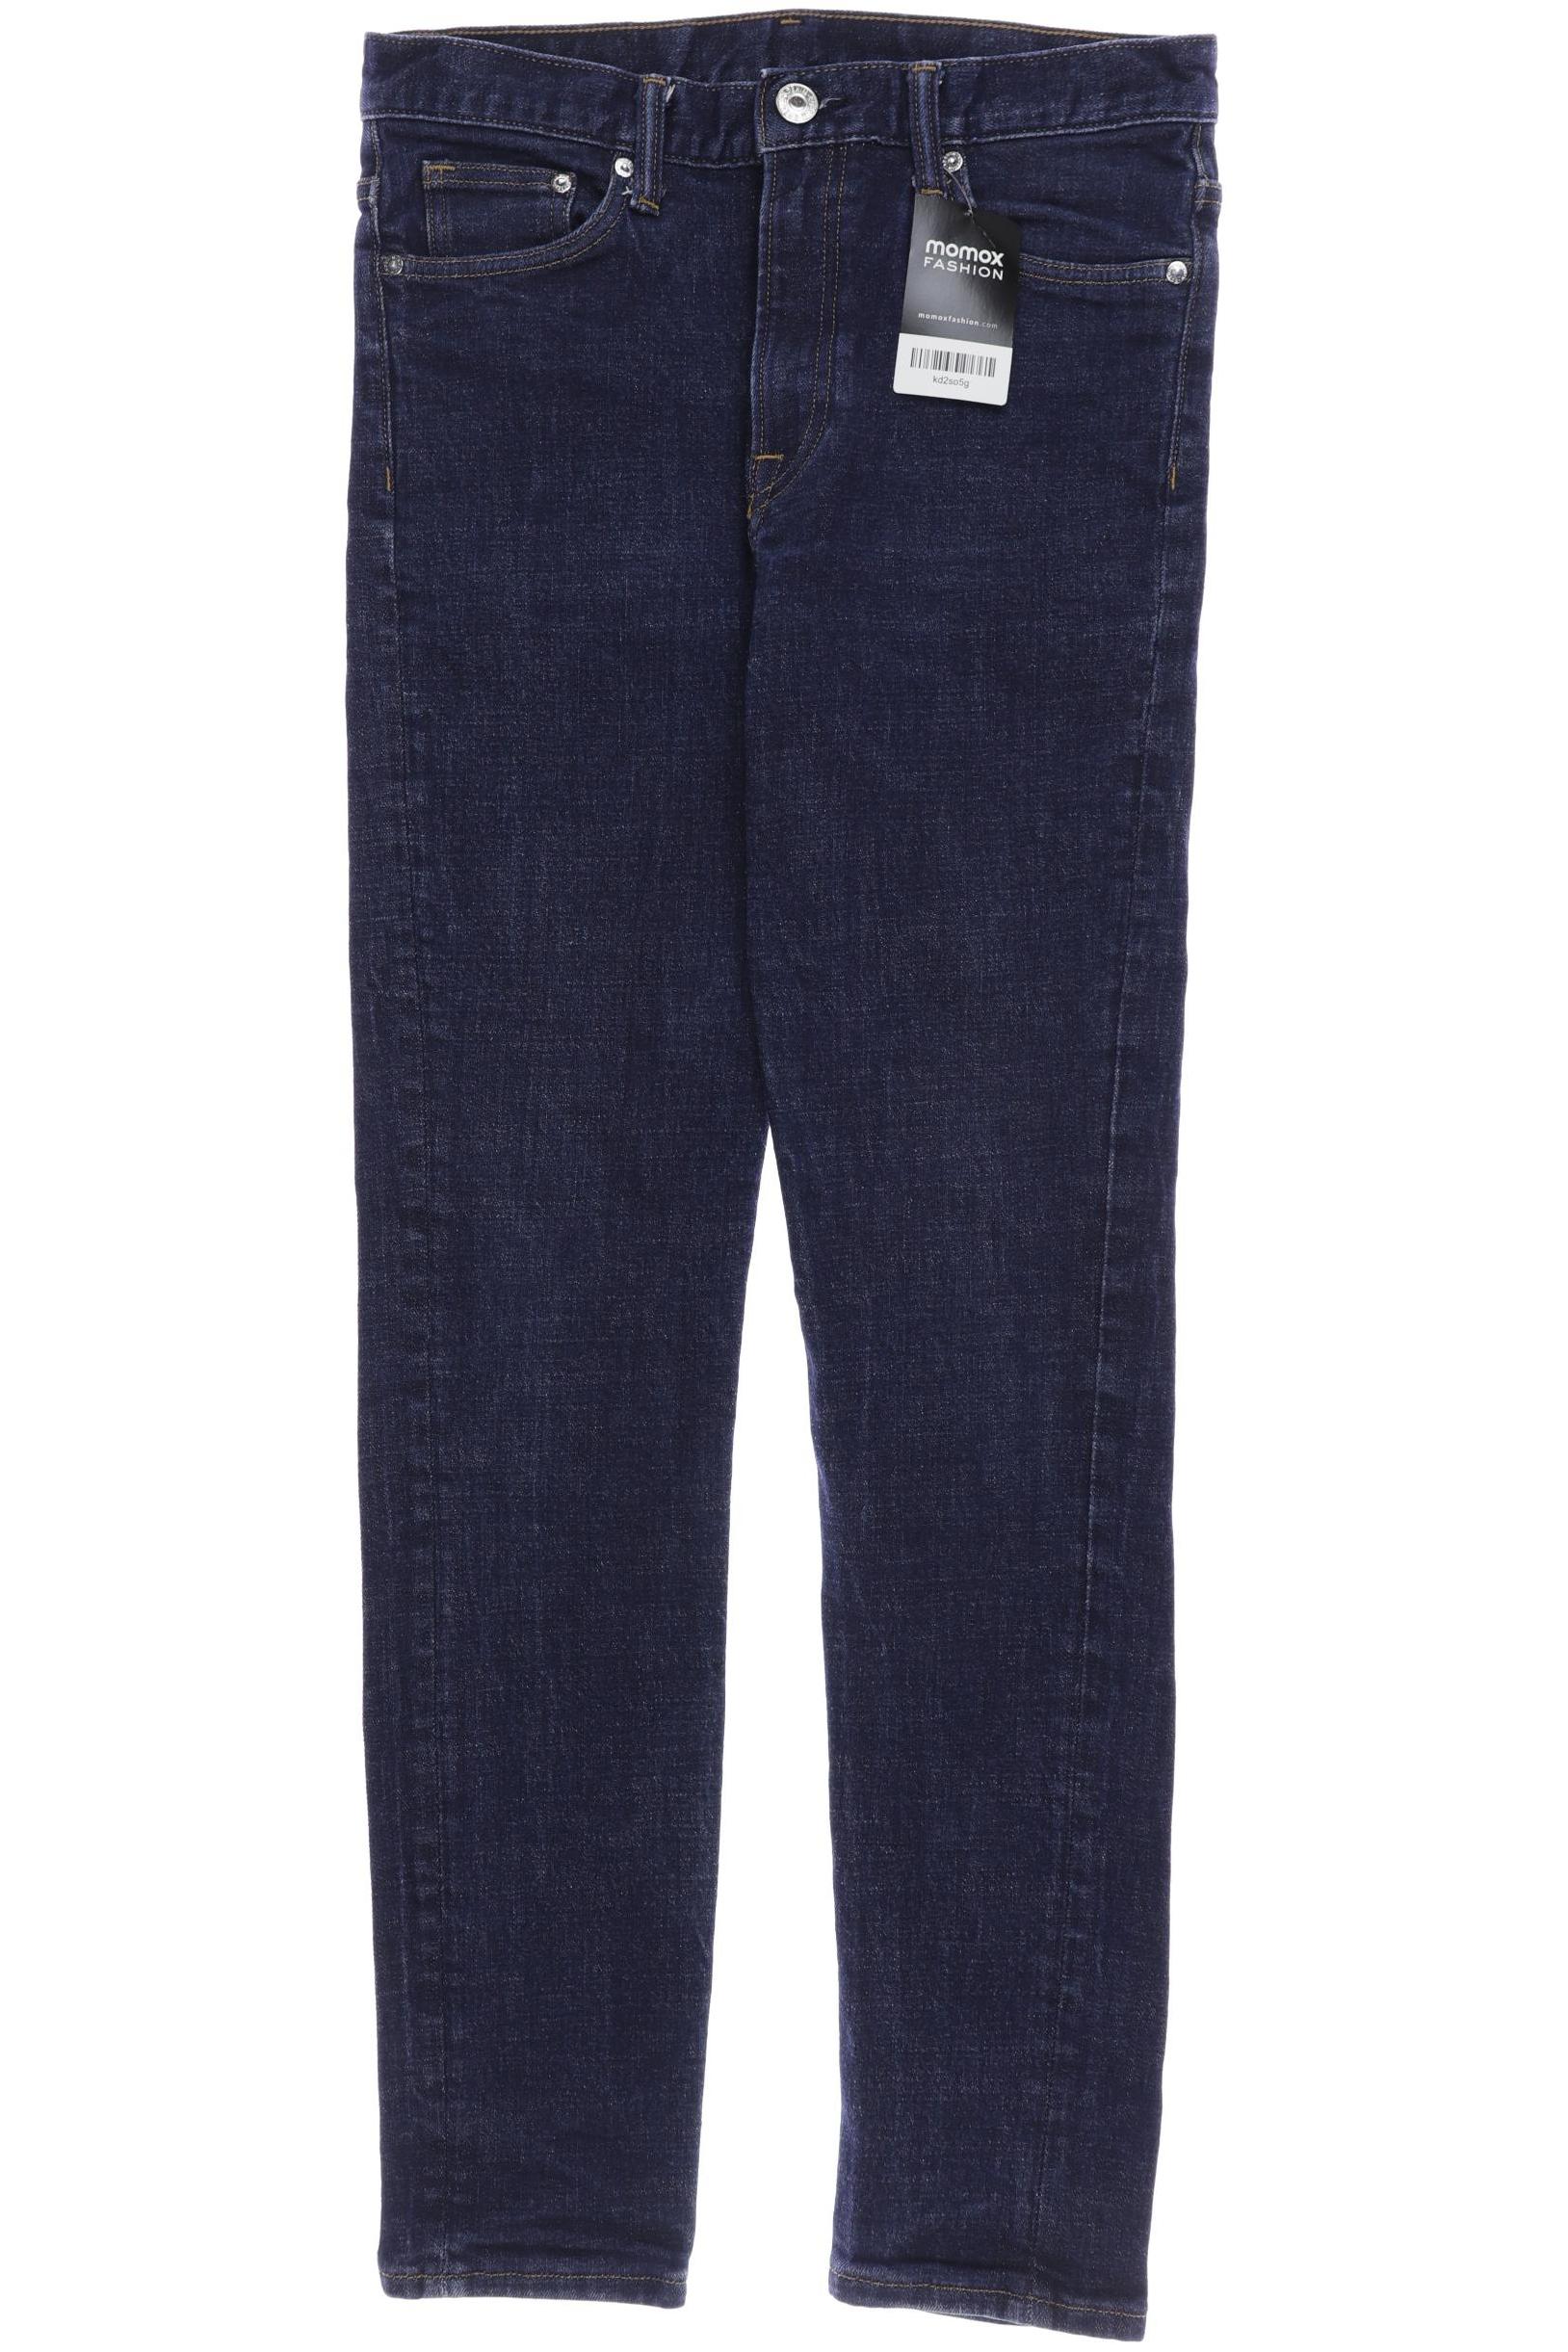 H&M Damen Jeans, marineblau, Gr. 40 von H&M